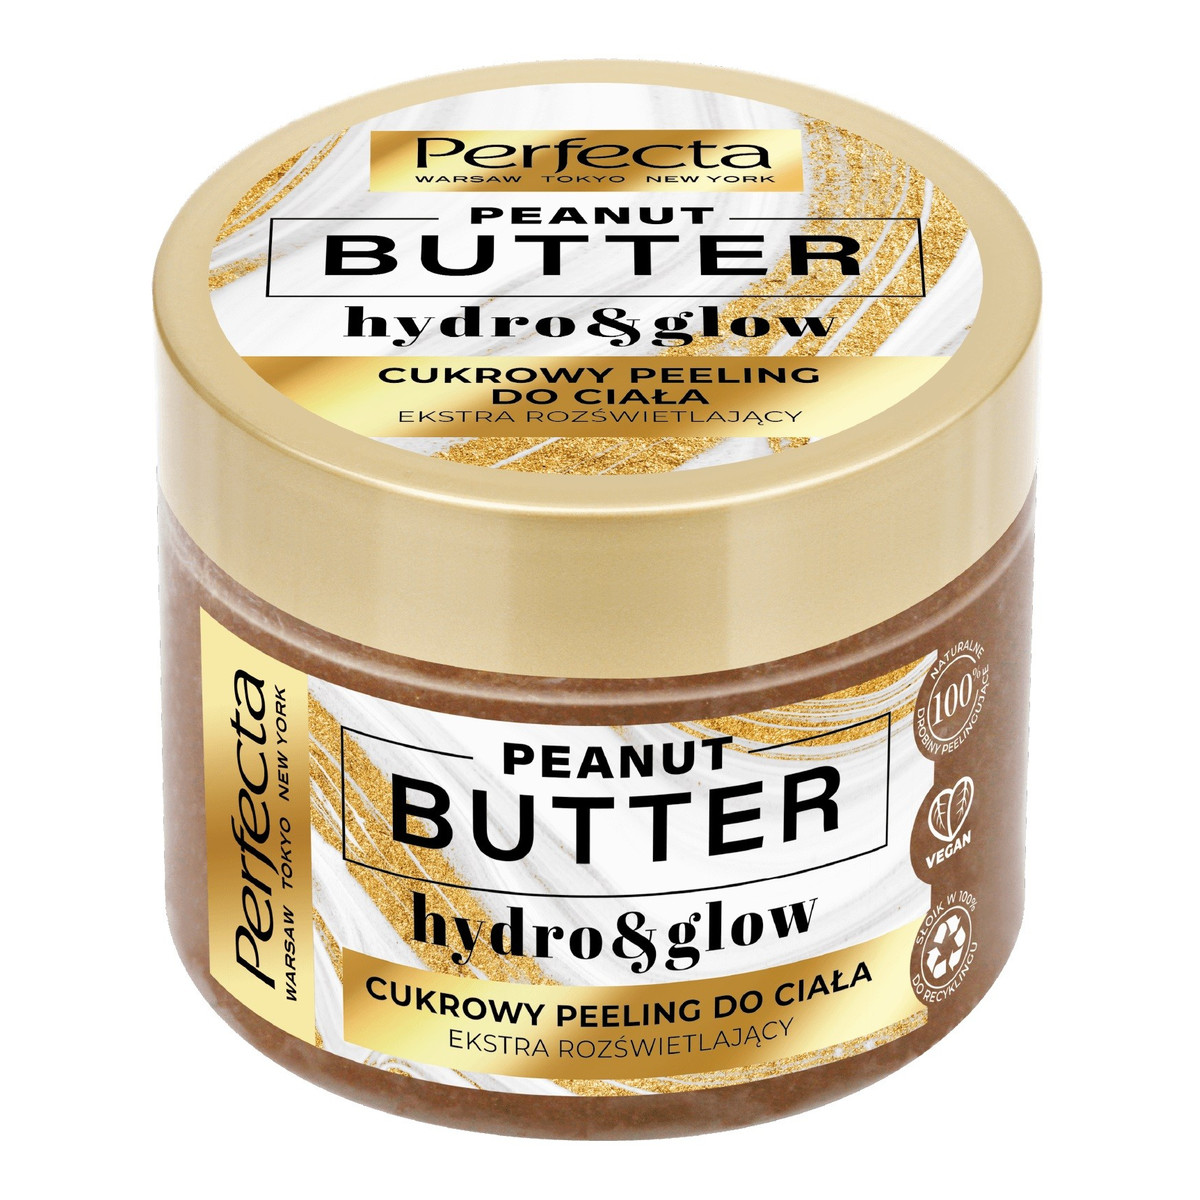 Perfecta Peanut Butter Cukrowy Peeling do ciała - extra rozświetlający 300g